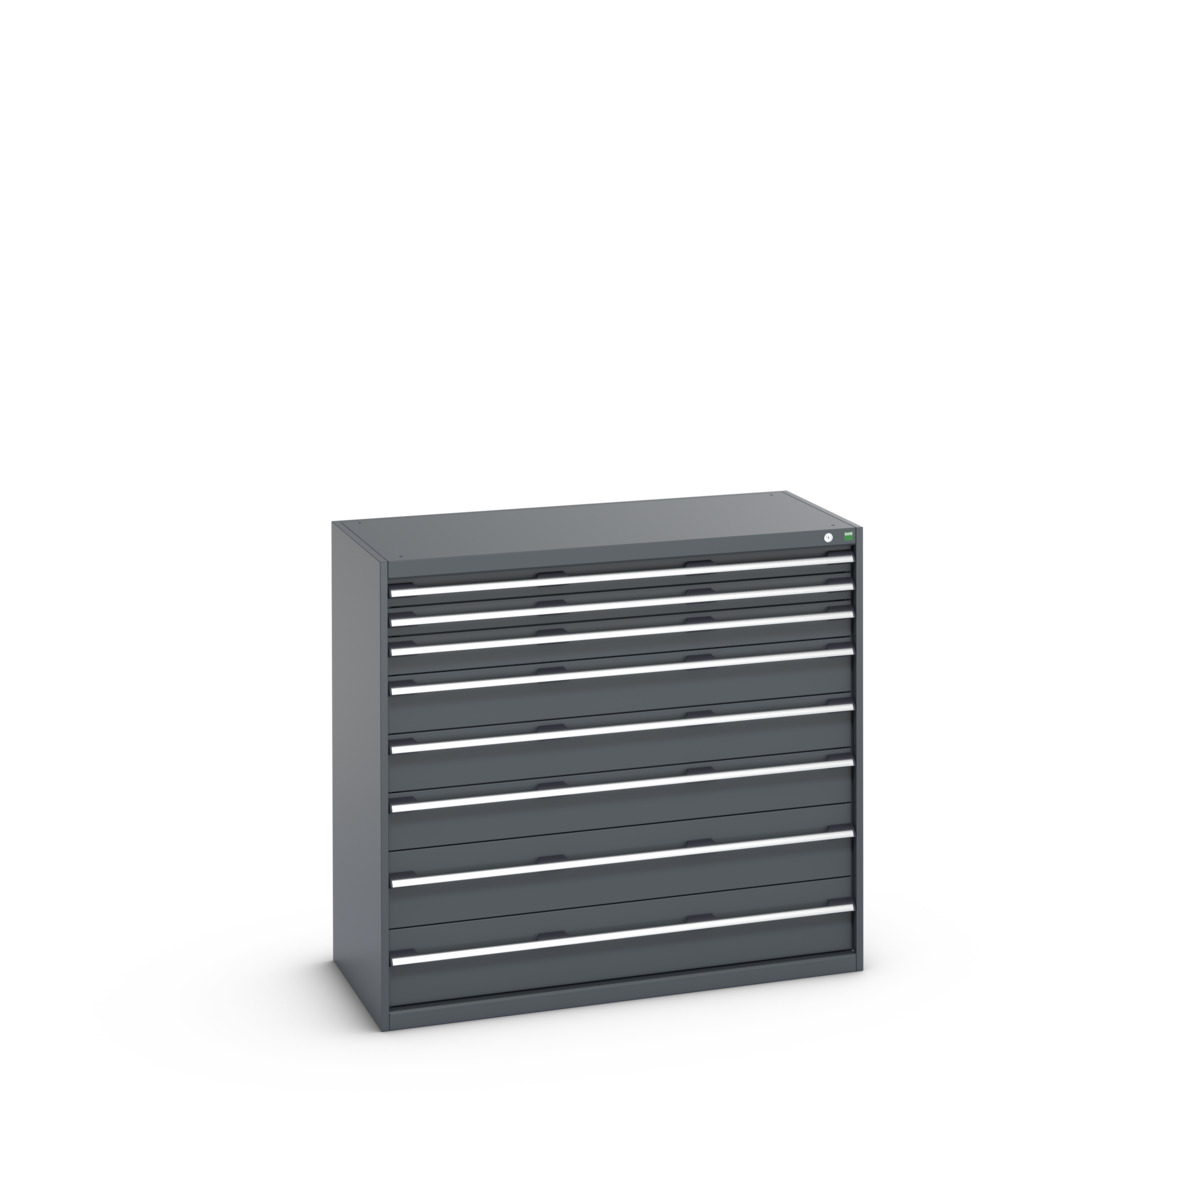 40022130.77V - cubio drawer cabinet